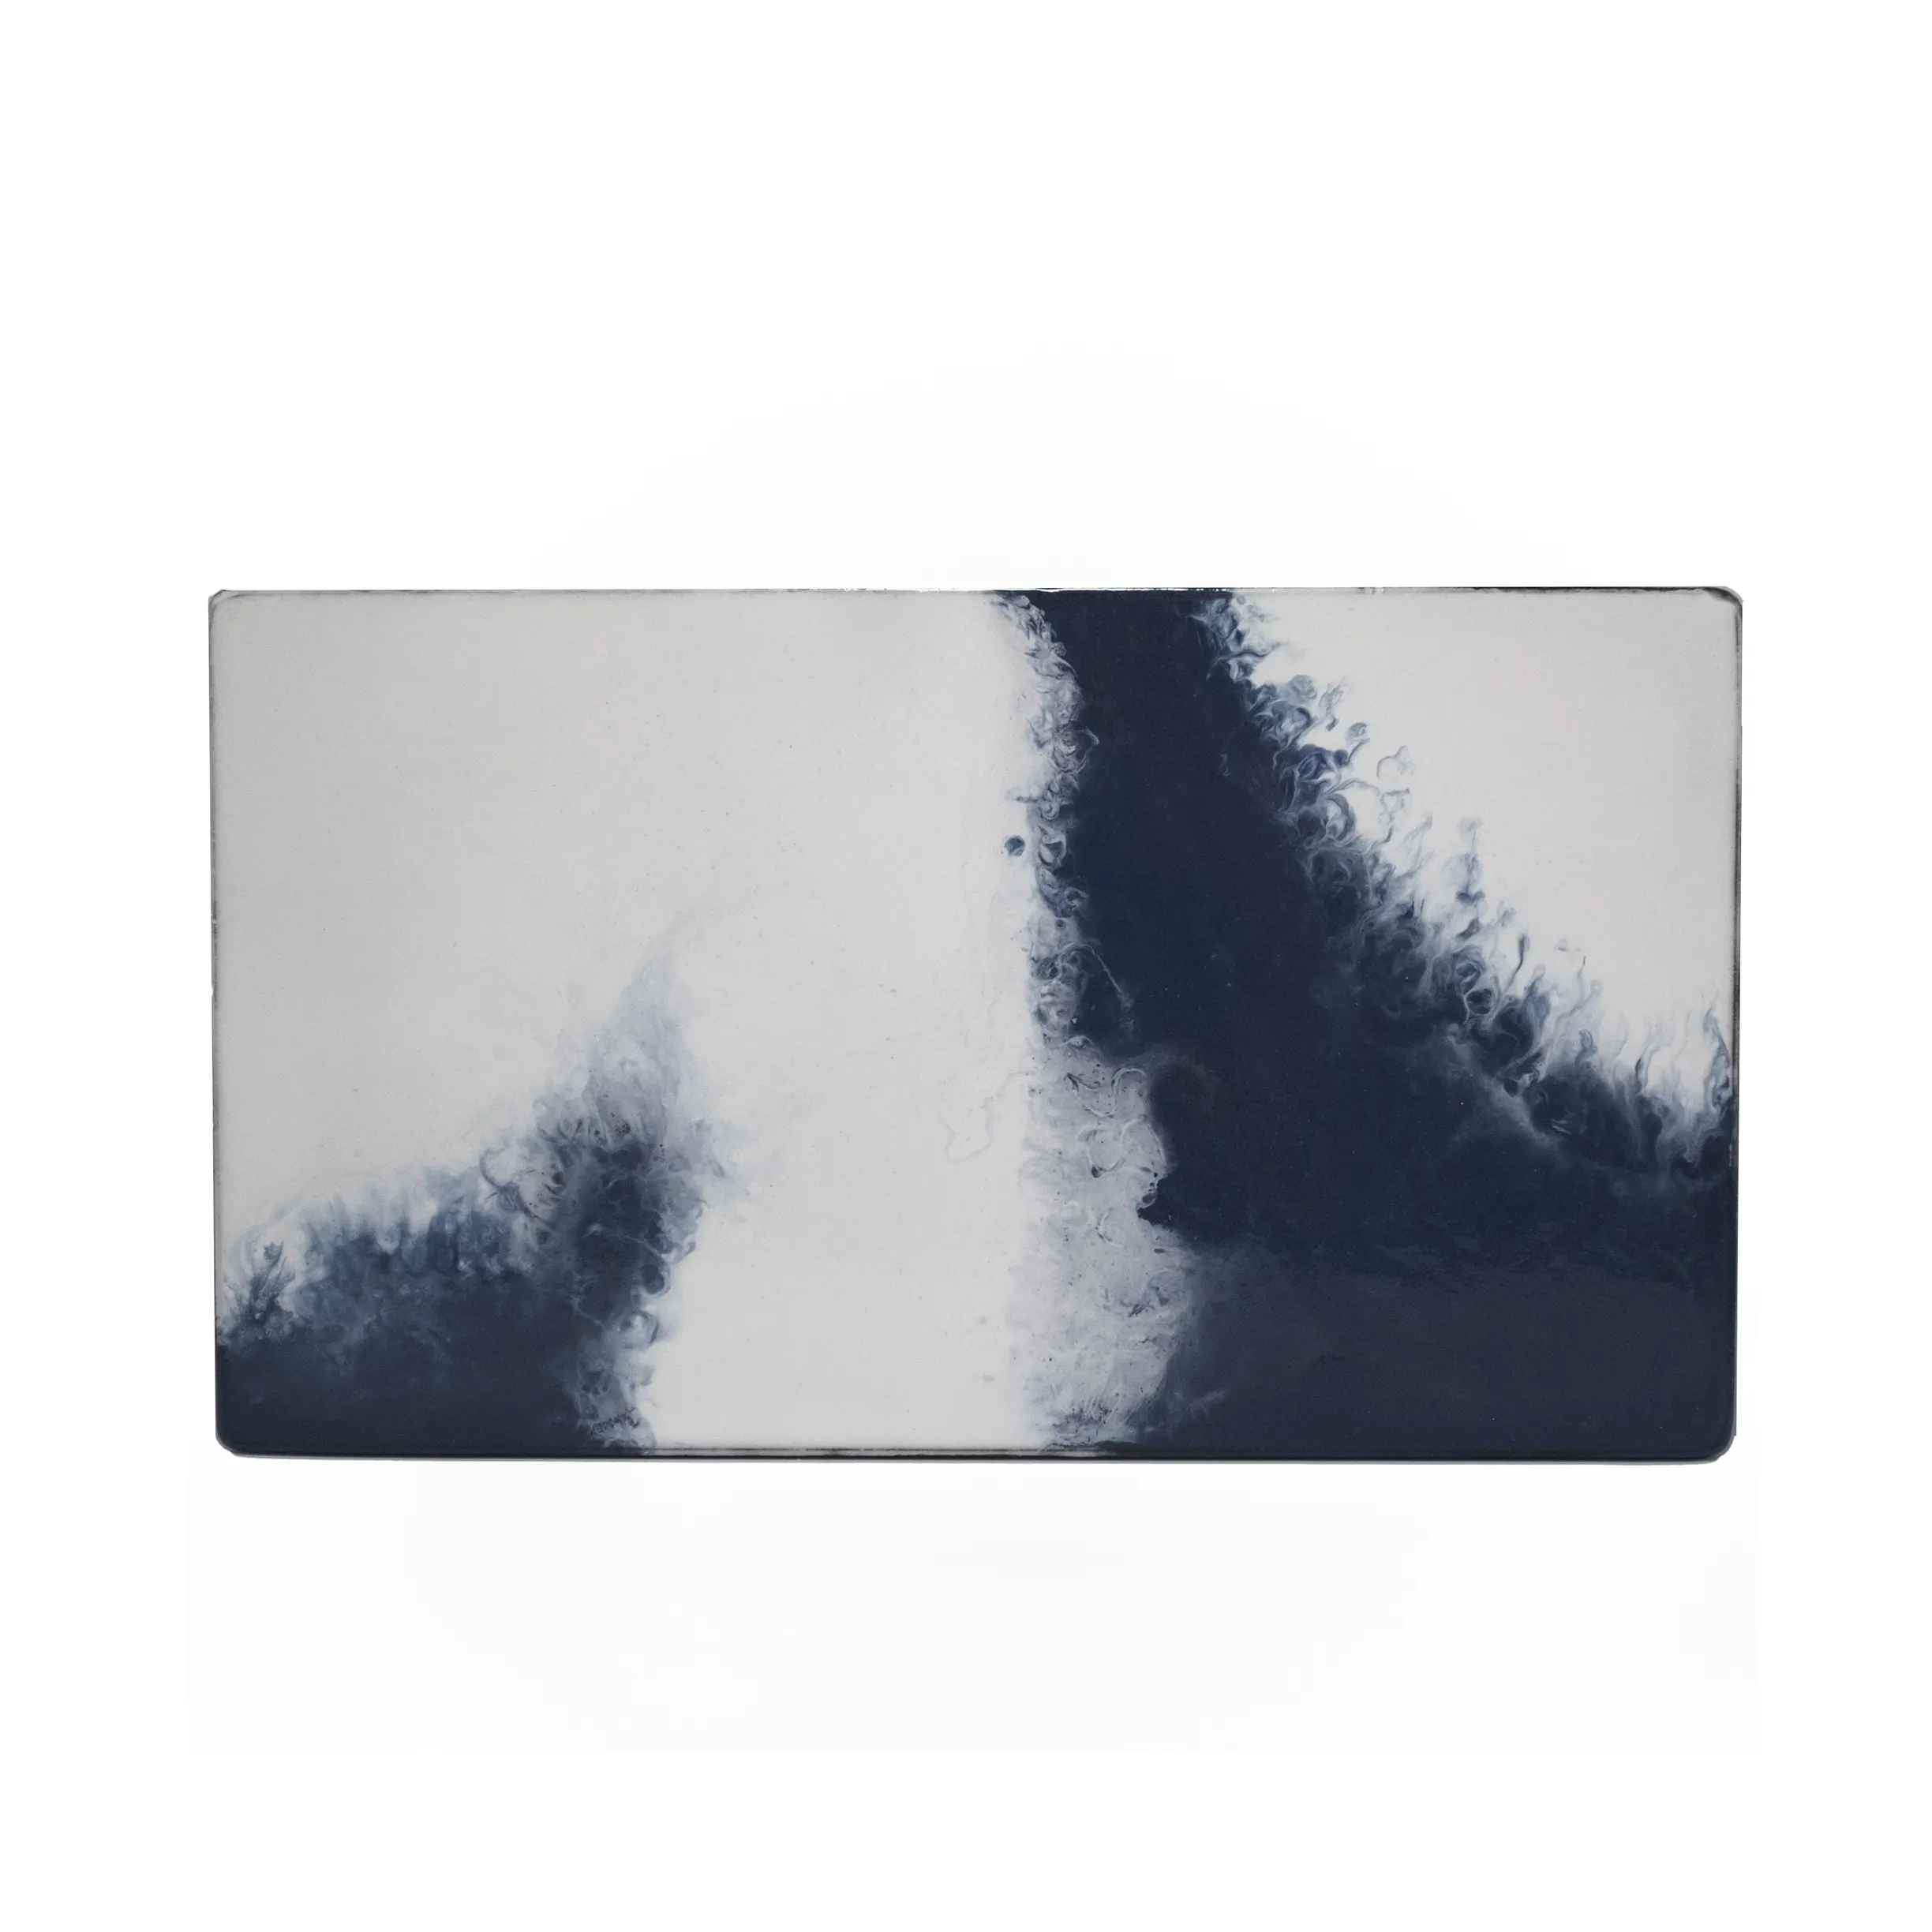 Эксклюзивная плоская пластина из лавы Etna, глазурованная в белом и нефтяном цветах, идеально подходит для сервировки и демонстрации